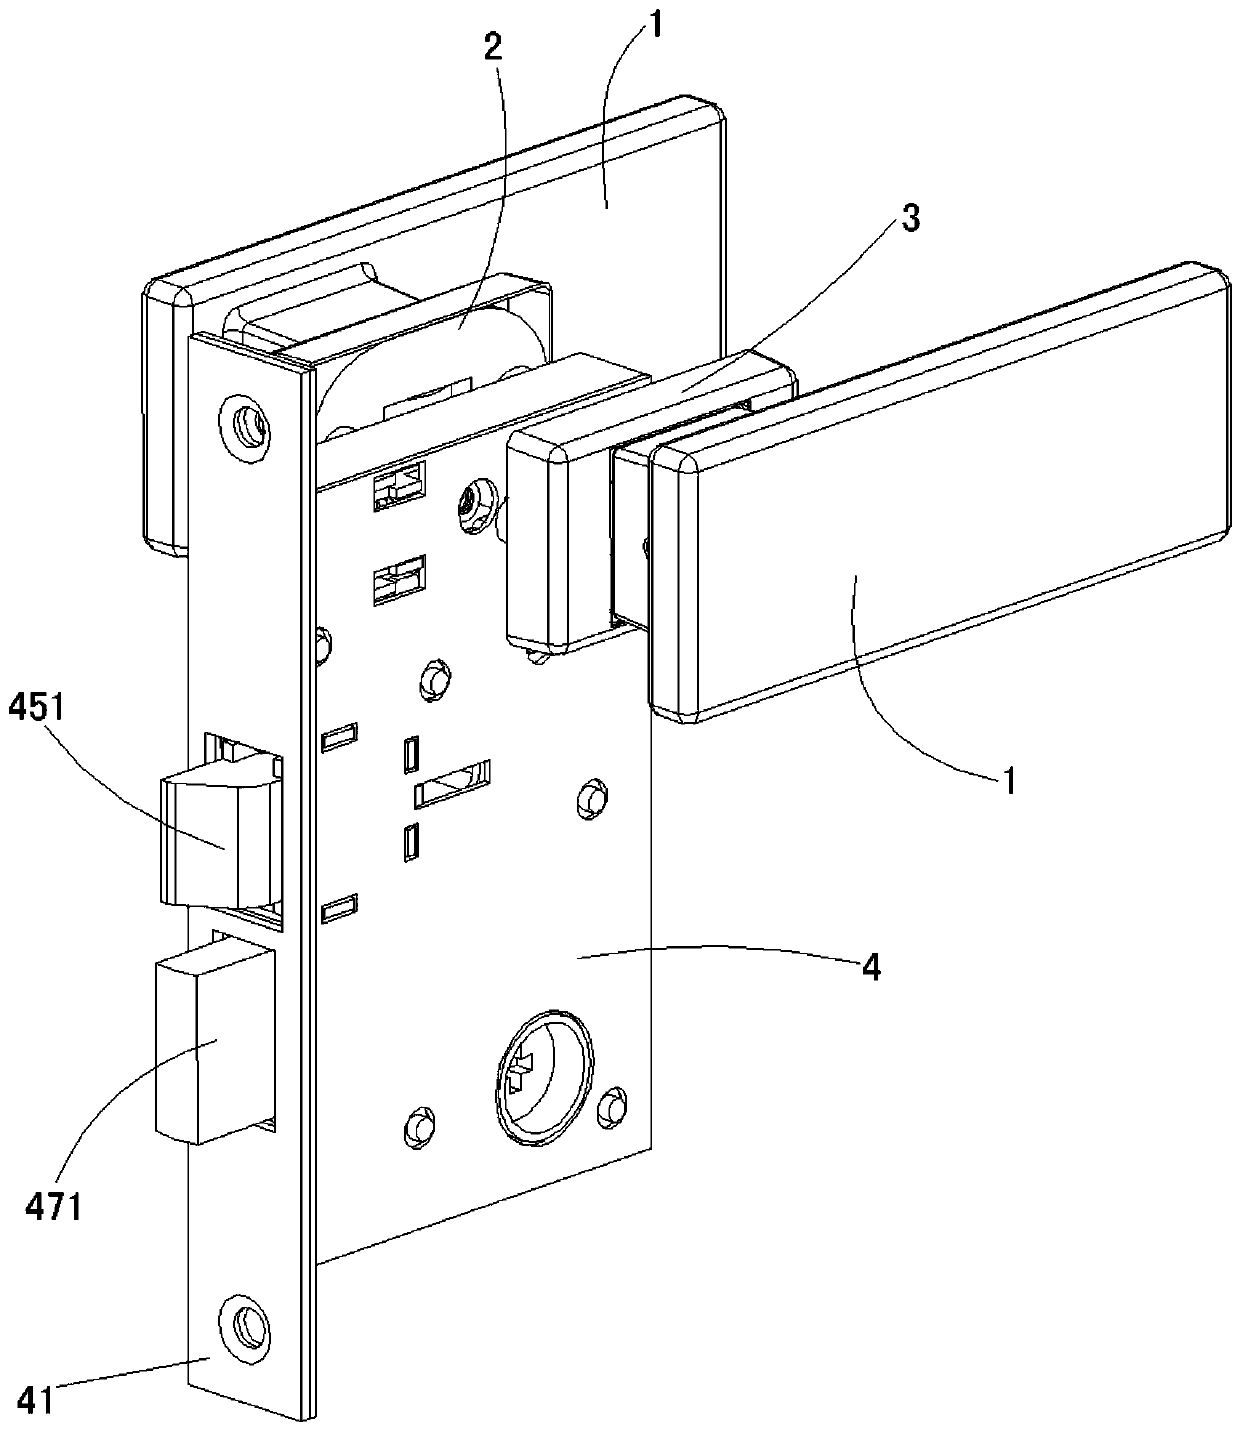 Push-pull type door lock structure